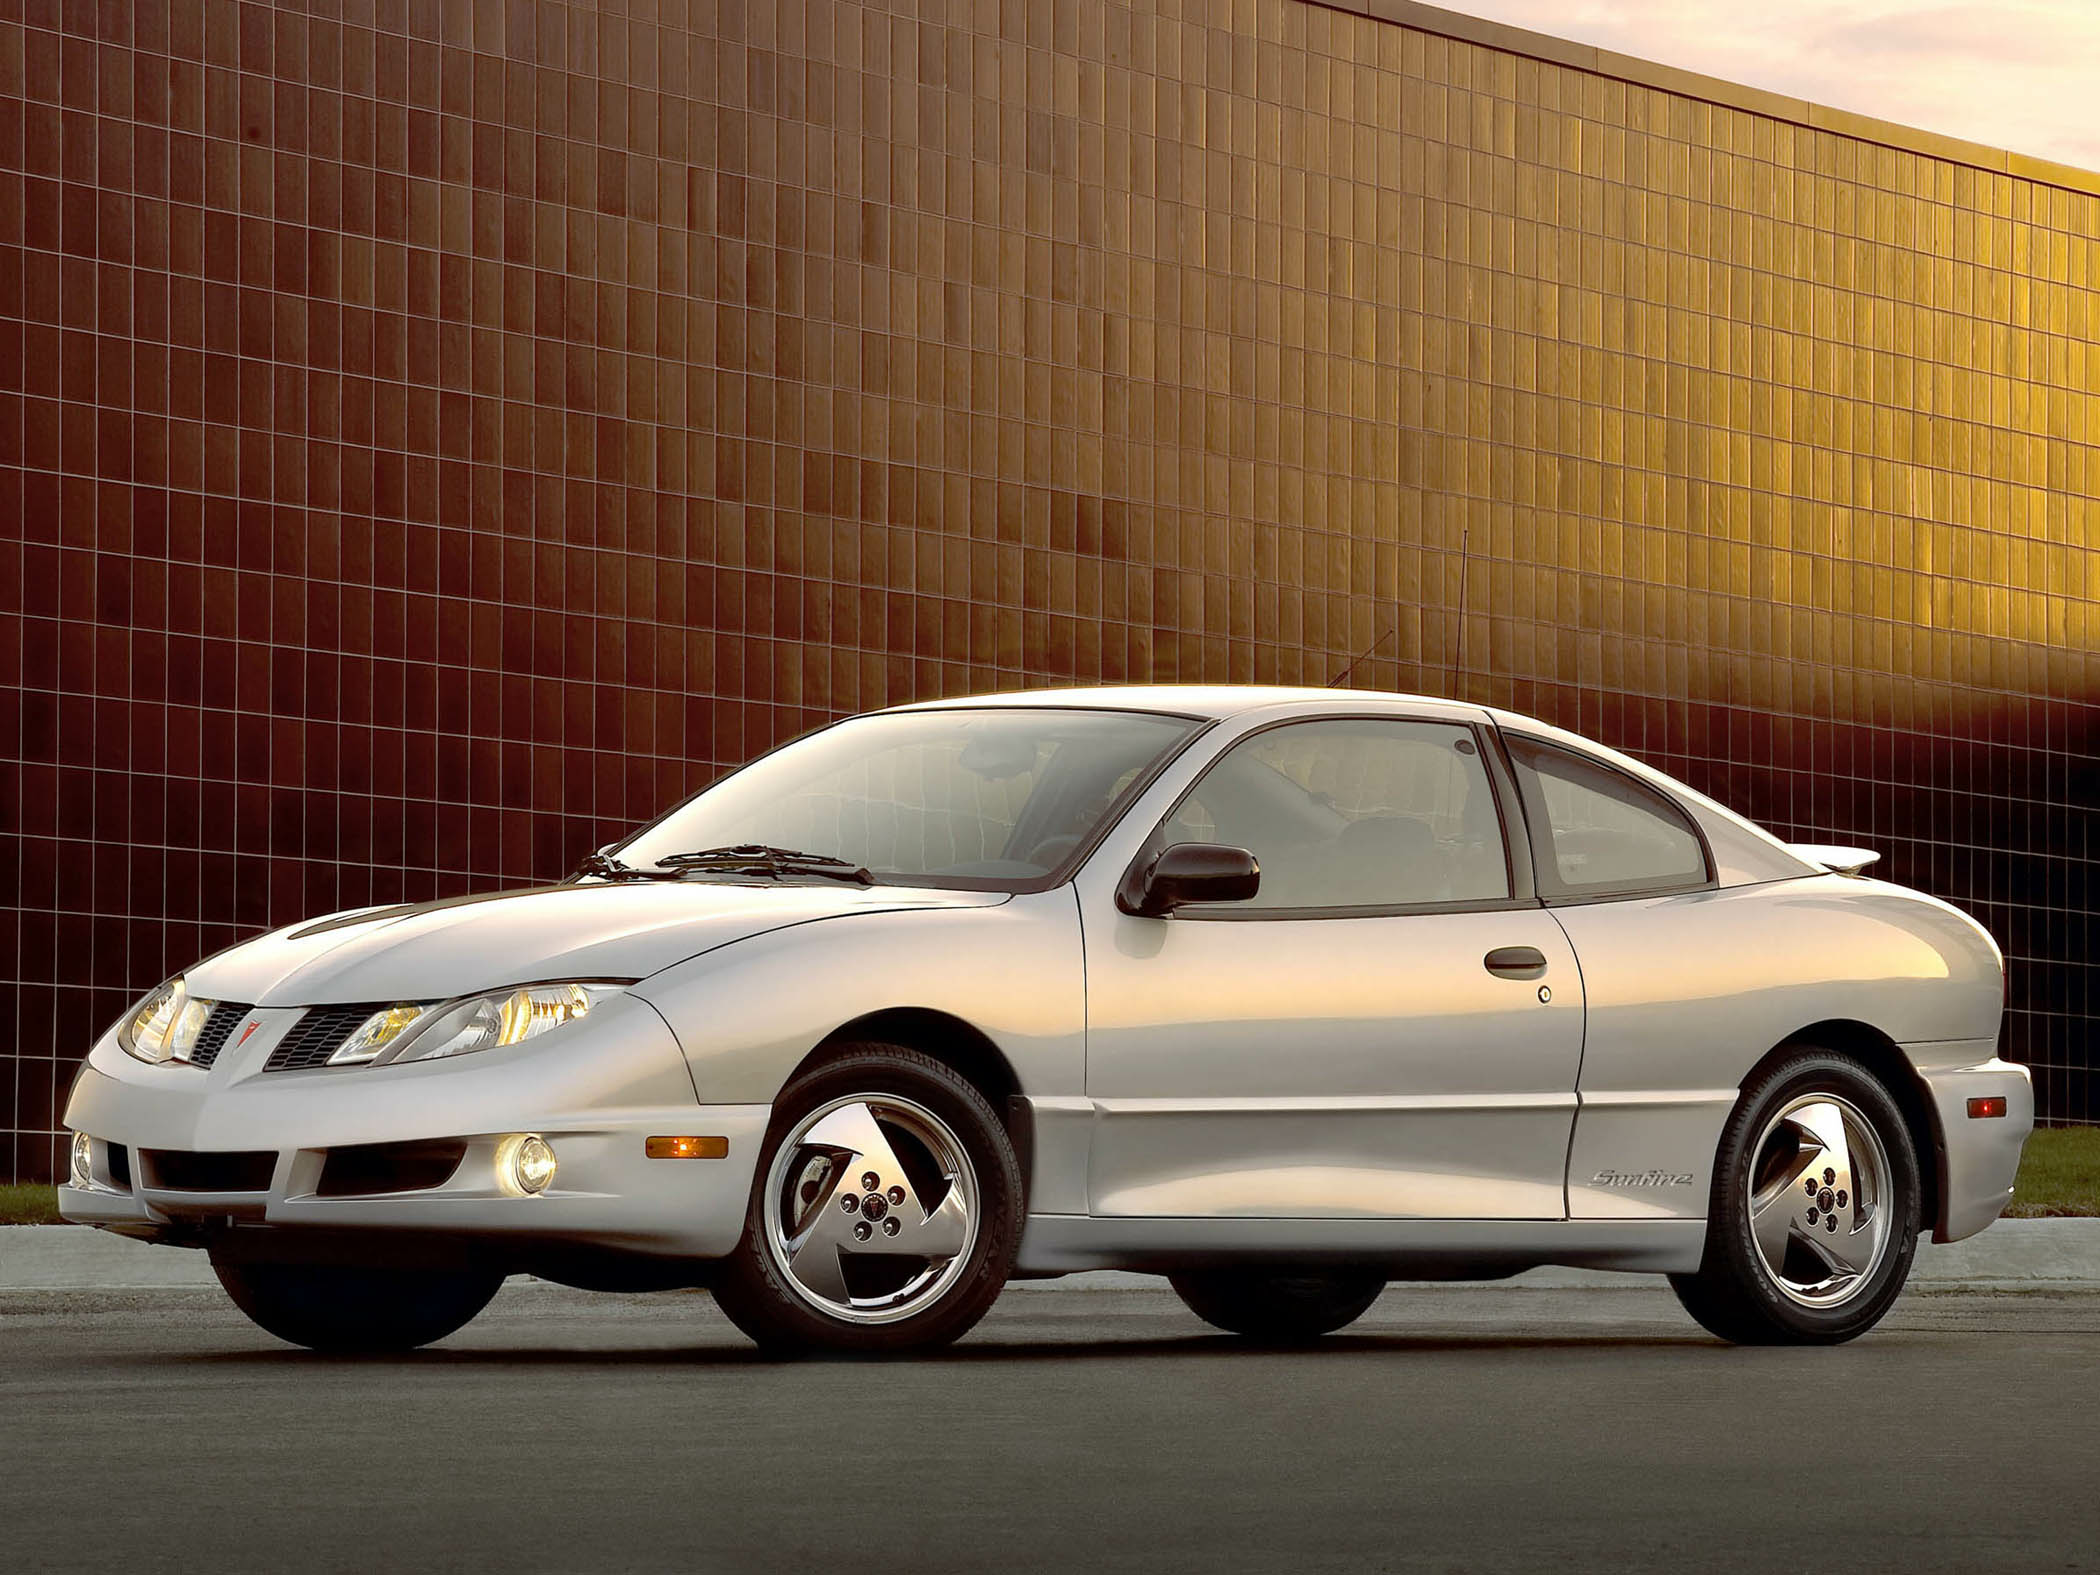 2004 Pontiac Sunfire